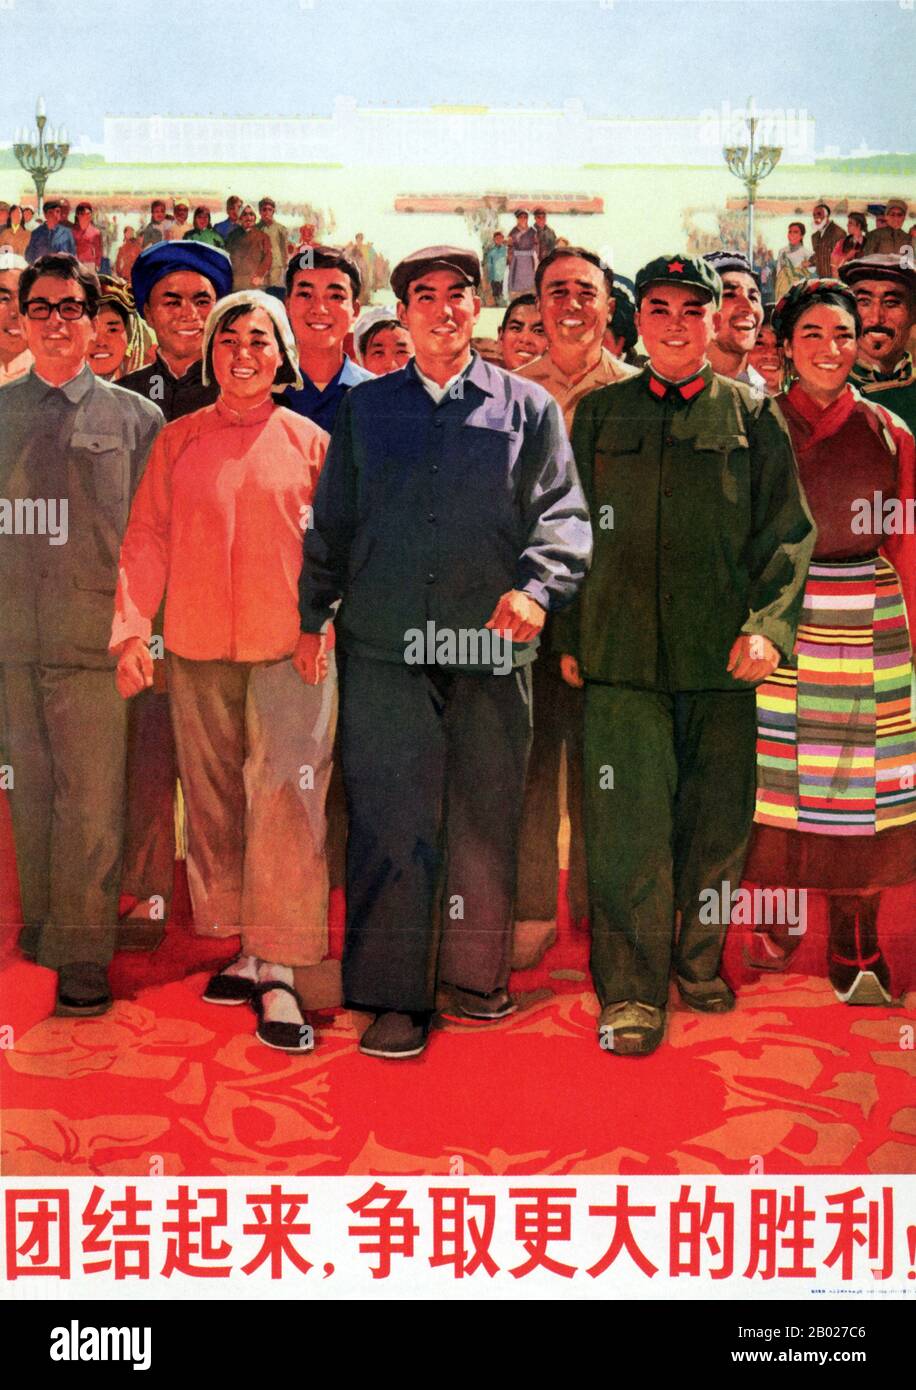 Bis 1973 war das kommunistische China sieben Jahre in die Kulturrevolution, die im Mai 1966 begonnen hatte. Die "Lin Biao-Phase" war bereits vorbei, Lin war bei einem Luftunfall über der Mongolei gestorben und versuchte offenbar, in die Sowjetunion zu fliehen. Doch die Kulturrevolution würde bis zu Maos Tod 1976 nicht endgültig zu Ende gehen. Der in diesem Plakat erwähnte "noch größere Sieg" markiert den Aufstieg der "Viererbande", darunter Wang Hongwen, Zhang Chunqiao, Yao Wenyuan und vor allem Maos Frau Jiang Qing. Die von dieser ultralinken Gruppe im Jahr 1973 angestartete Hauptkampagne zielte darauf ab, Zhou zu beenden Stockfoto